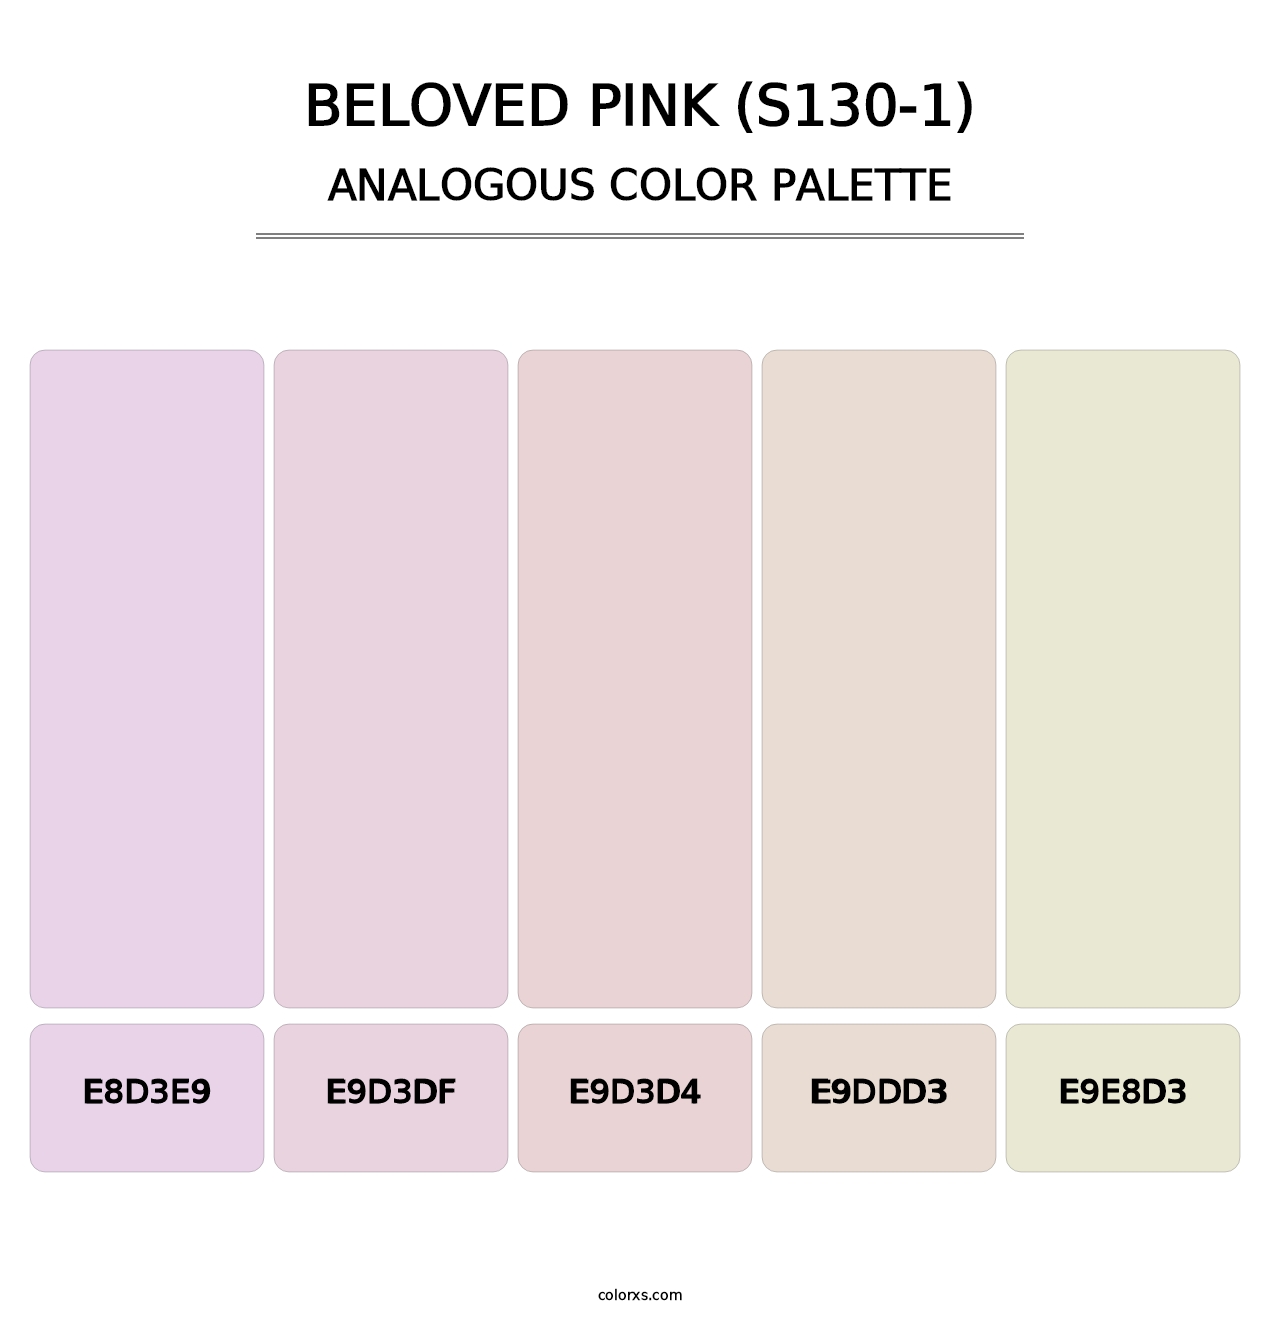 Beloved Pink (S130-1) - Analogous Color Palette